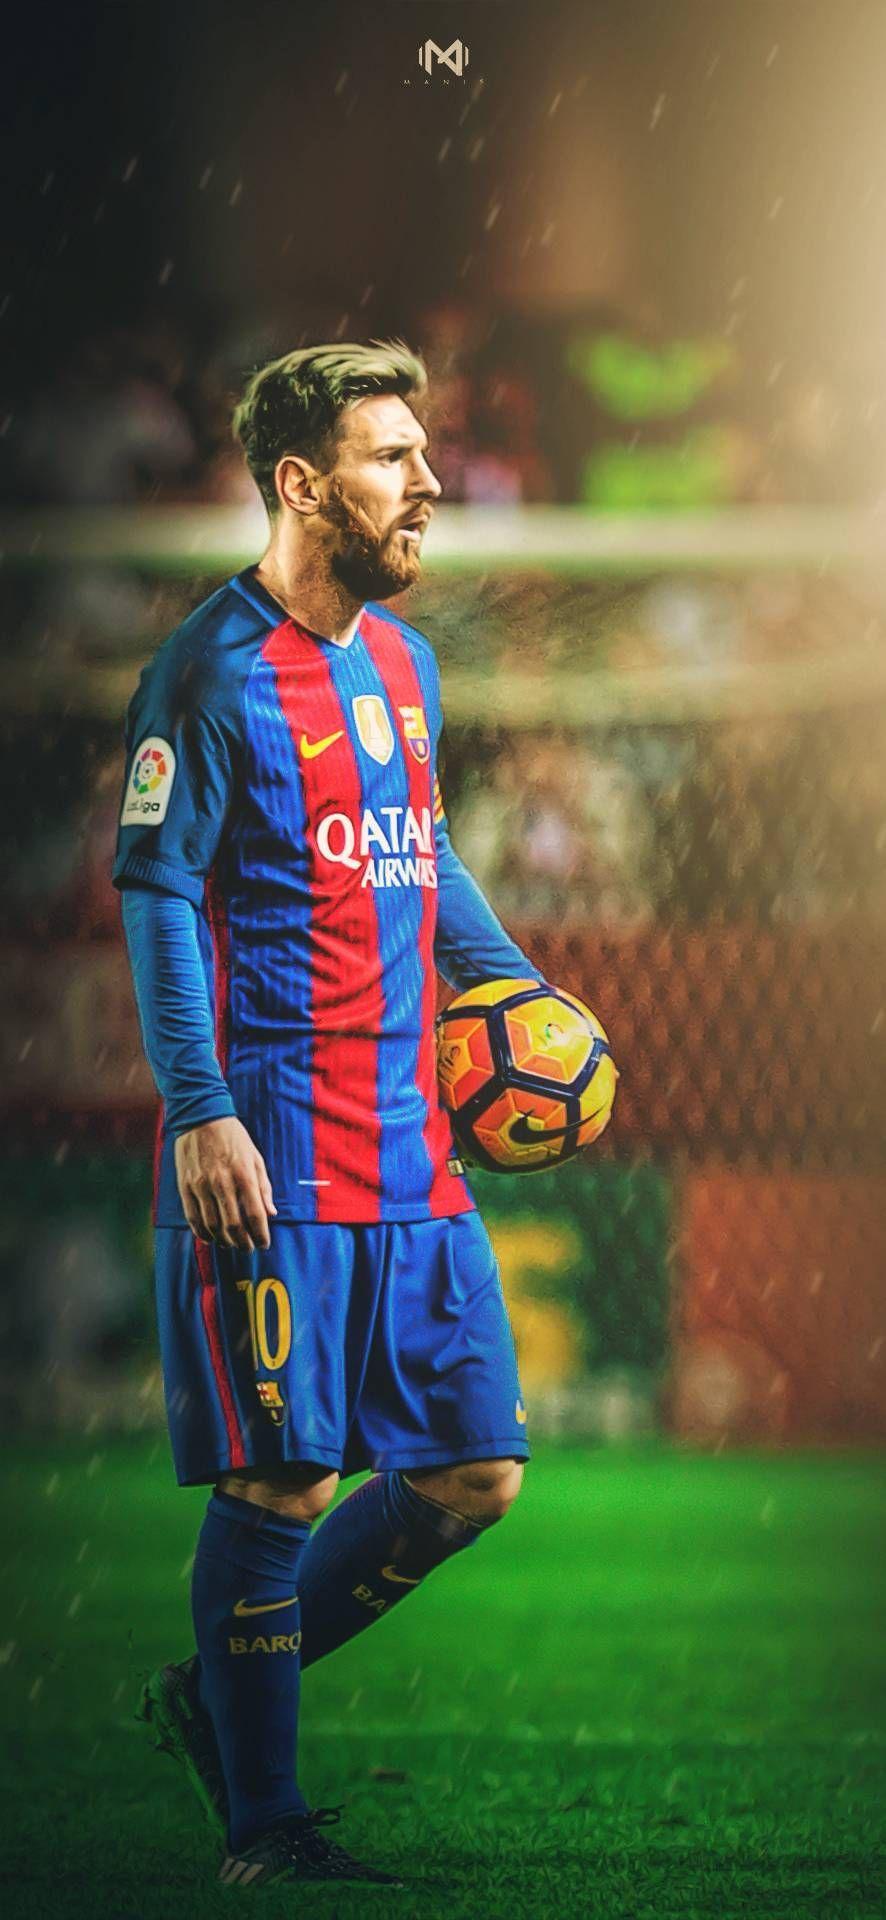 Nên tải ngay hình nền Messi Full HD Backgrounds để hòa mình vào không khí sống động của bóng đá. Mỗi chiếc máy tính đều cần một hình nền sôi động, năng động và phù hợp với chủ nhân, hãy để Messi và đội bóng của ông ta chiếm trọn trái tim bạn.